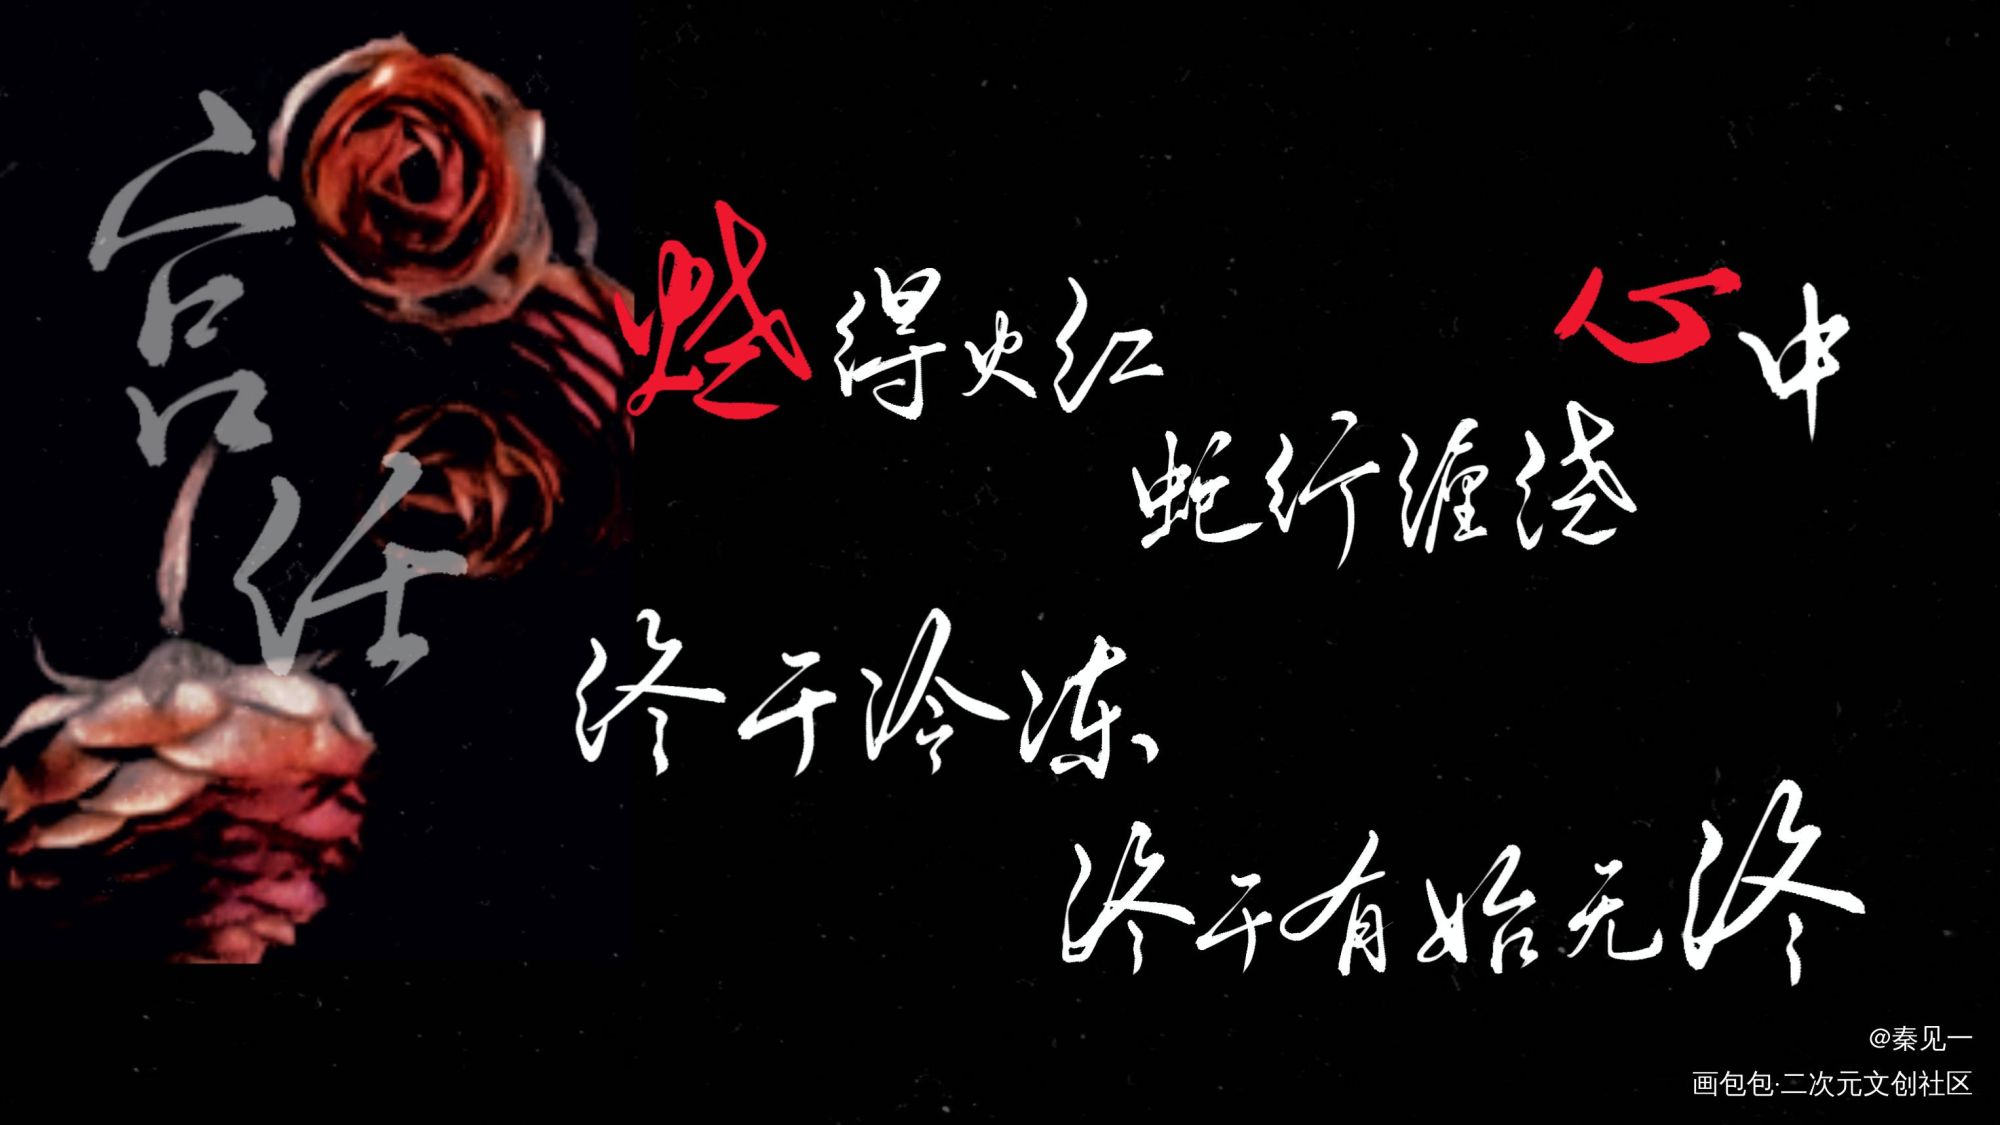 【188男团】《红玫瑰》合札_188男团188男团同人周边设计字体设计红玫瑰绘画作品